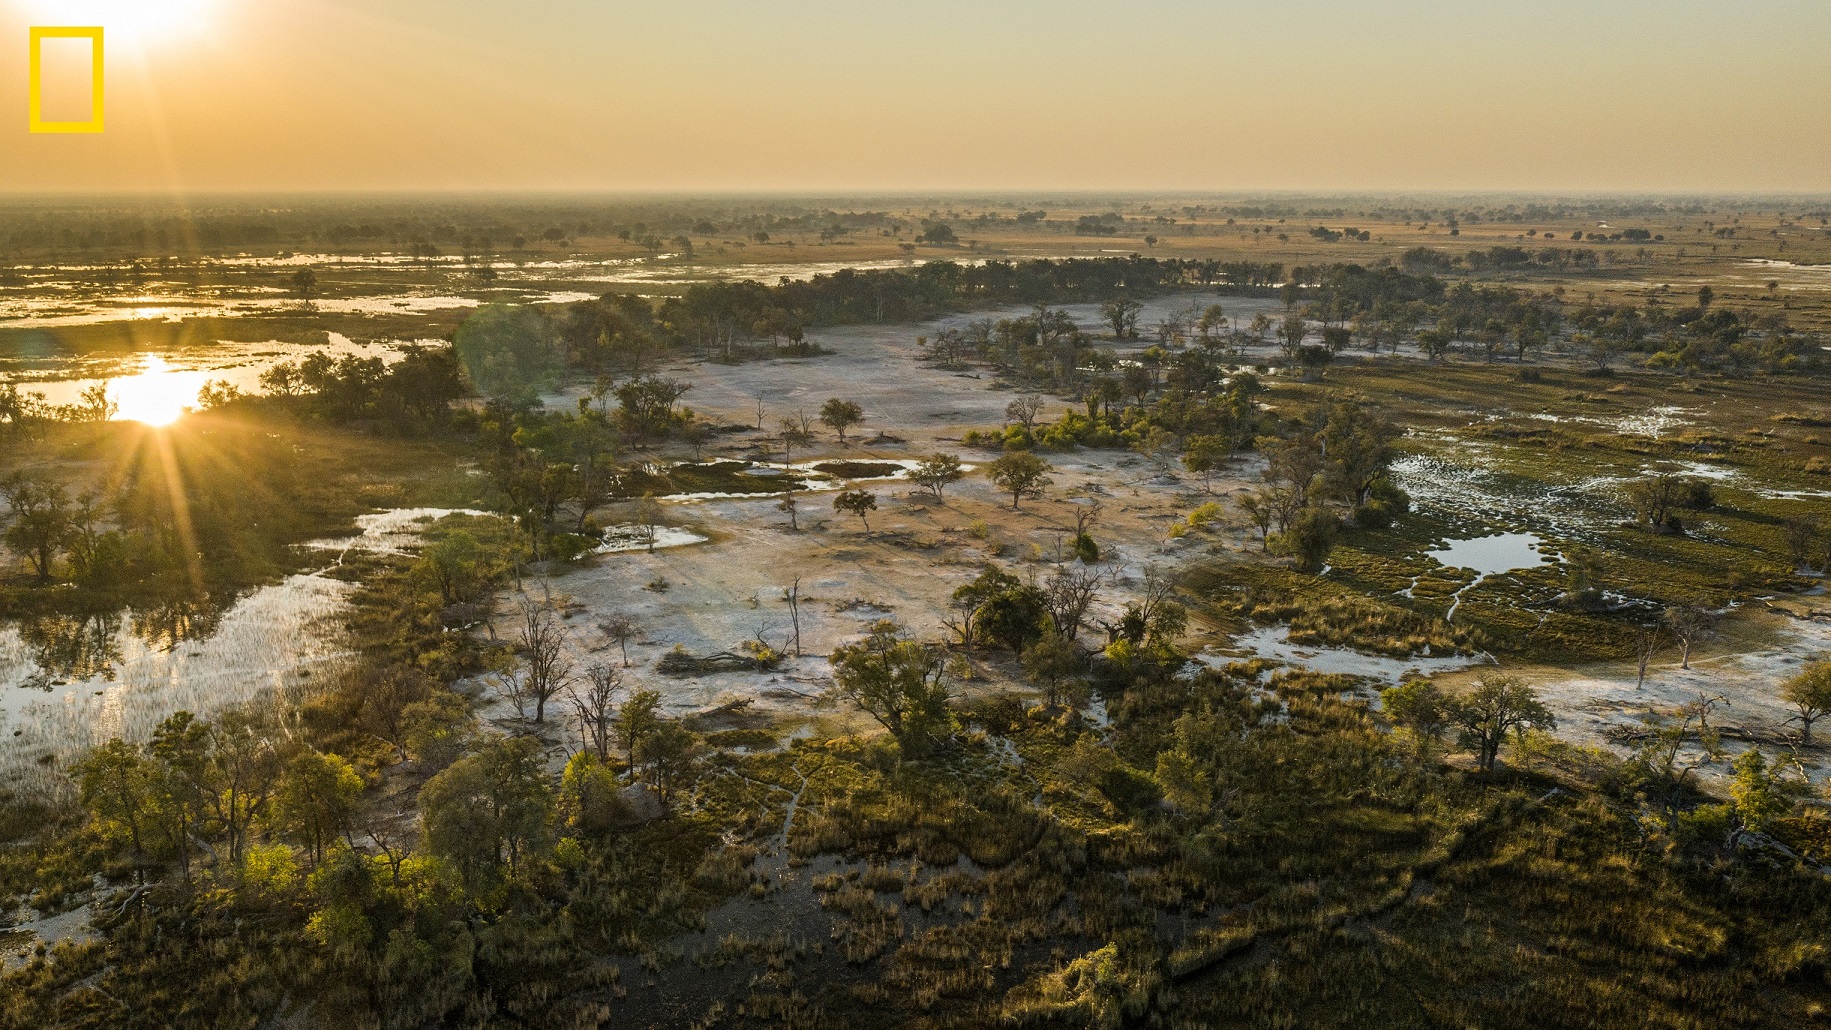 Botswana: We Must Go Beyond Upstream. Cleaver: De Beers to Invest